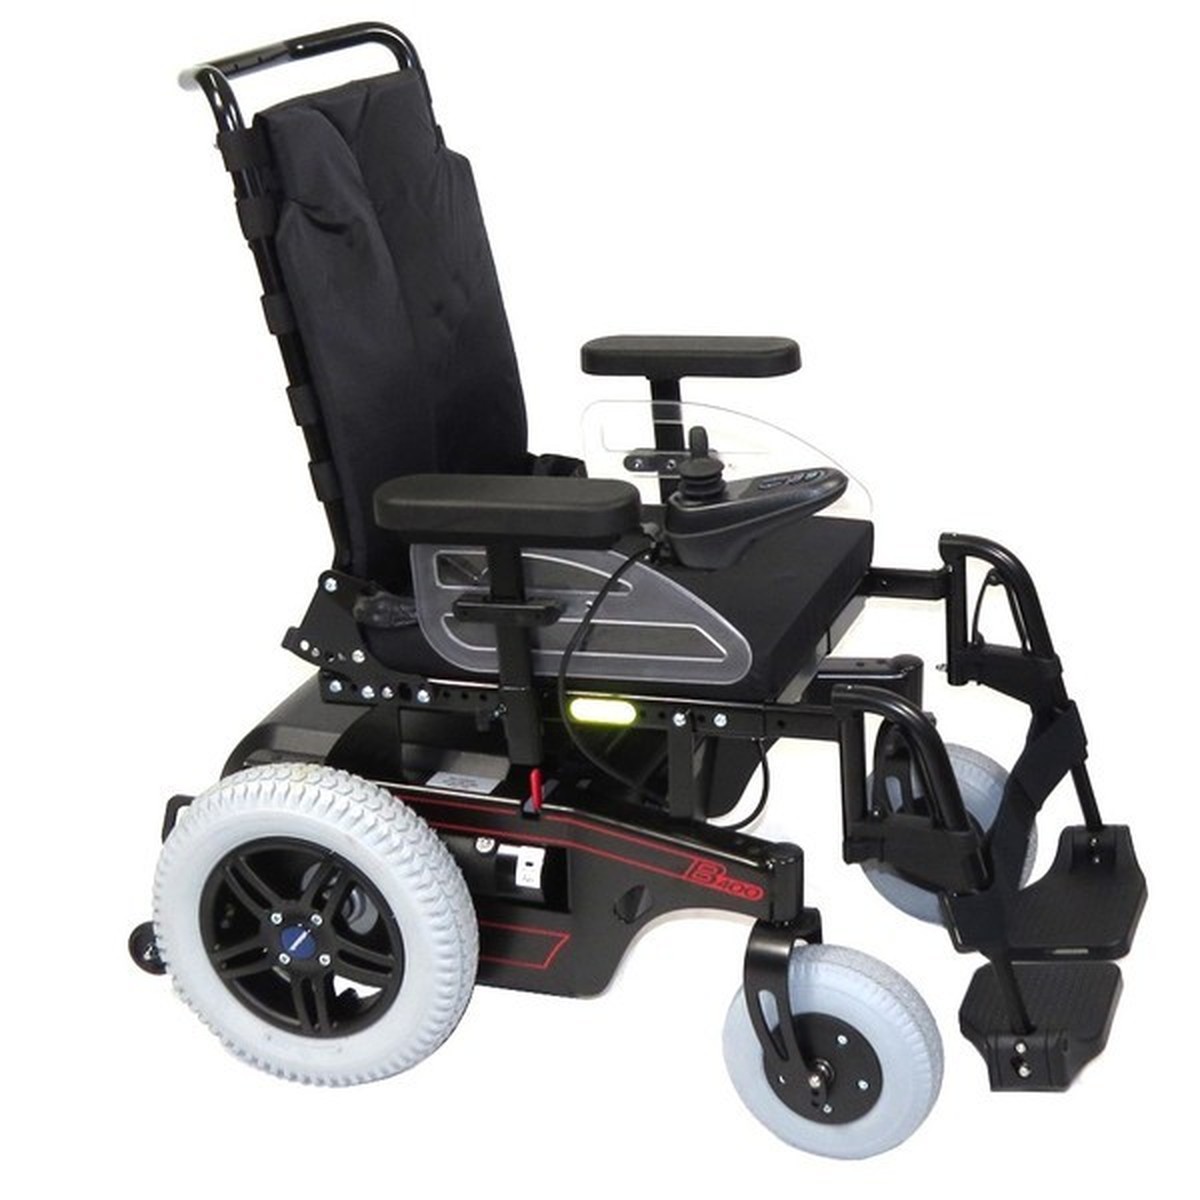 Foto do produto Cadeira de Rodas motorizada Reclinável B400 Ottobock